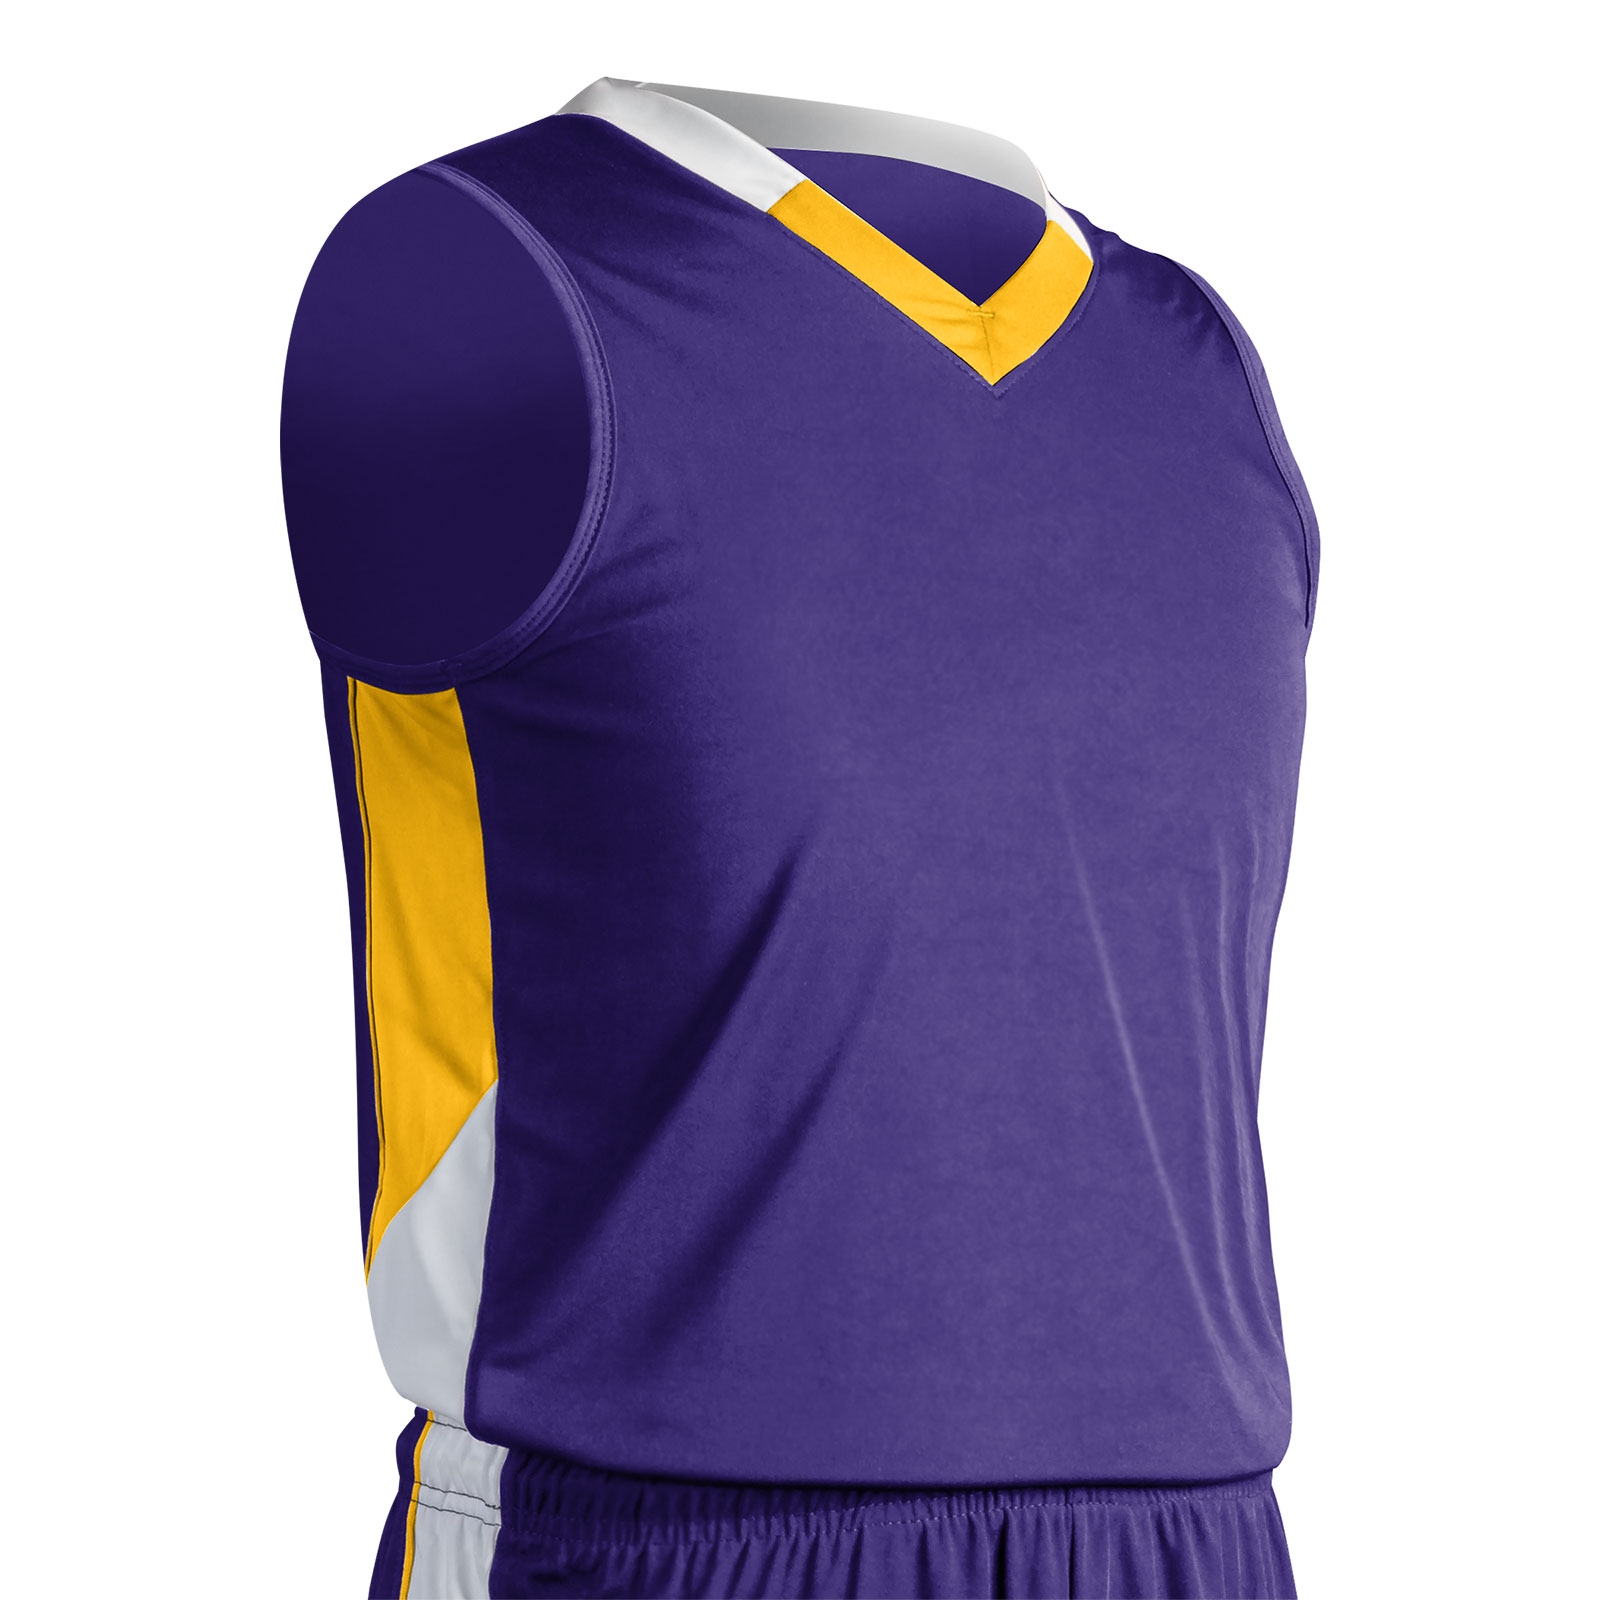 yellow and purple basketball jersey